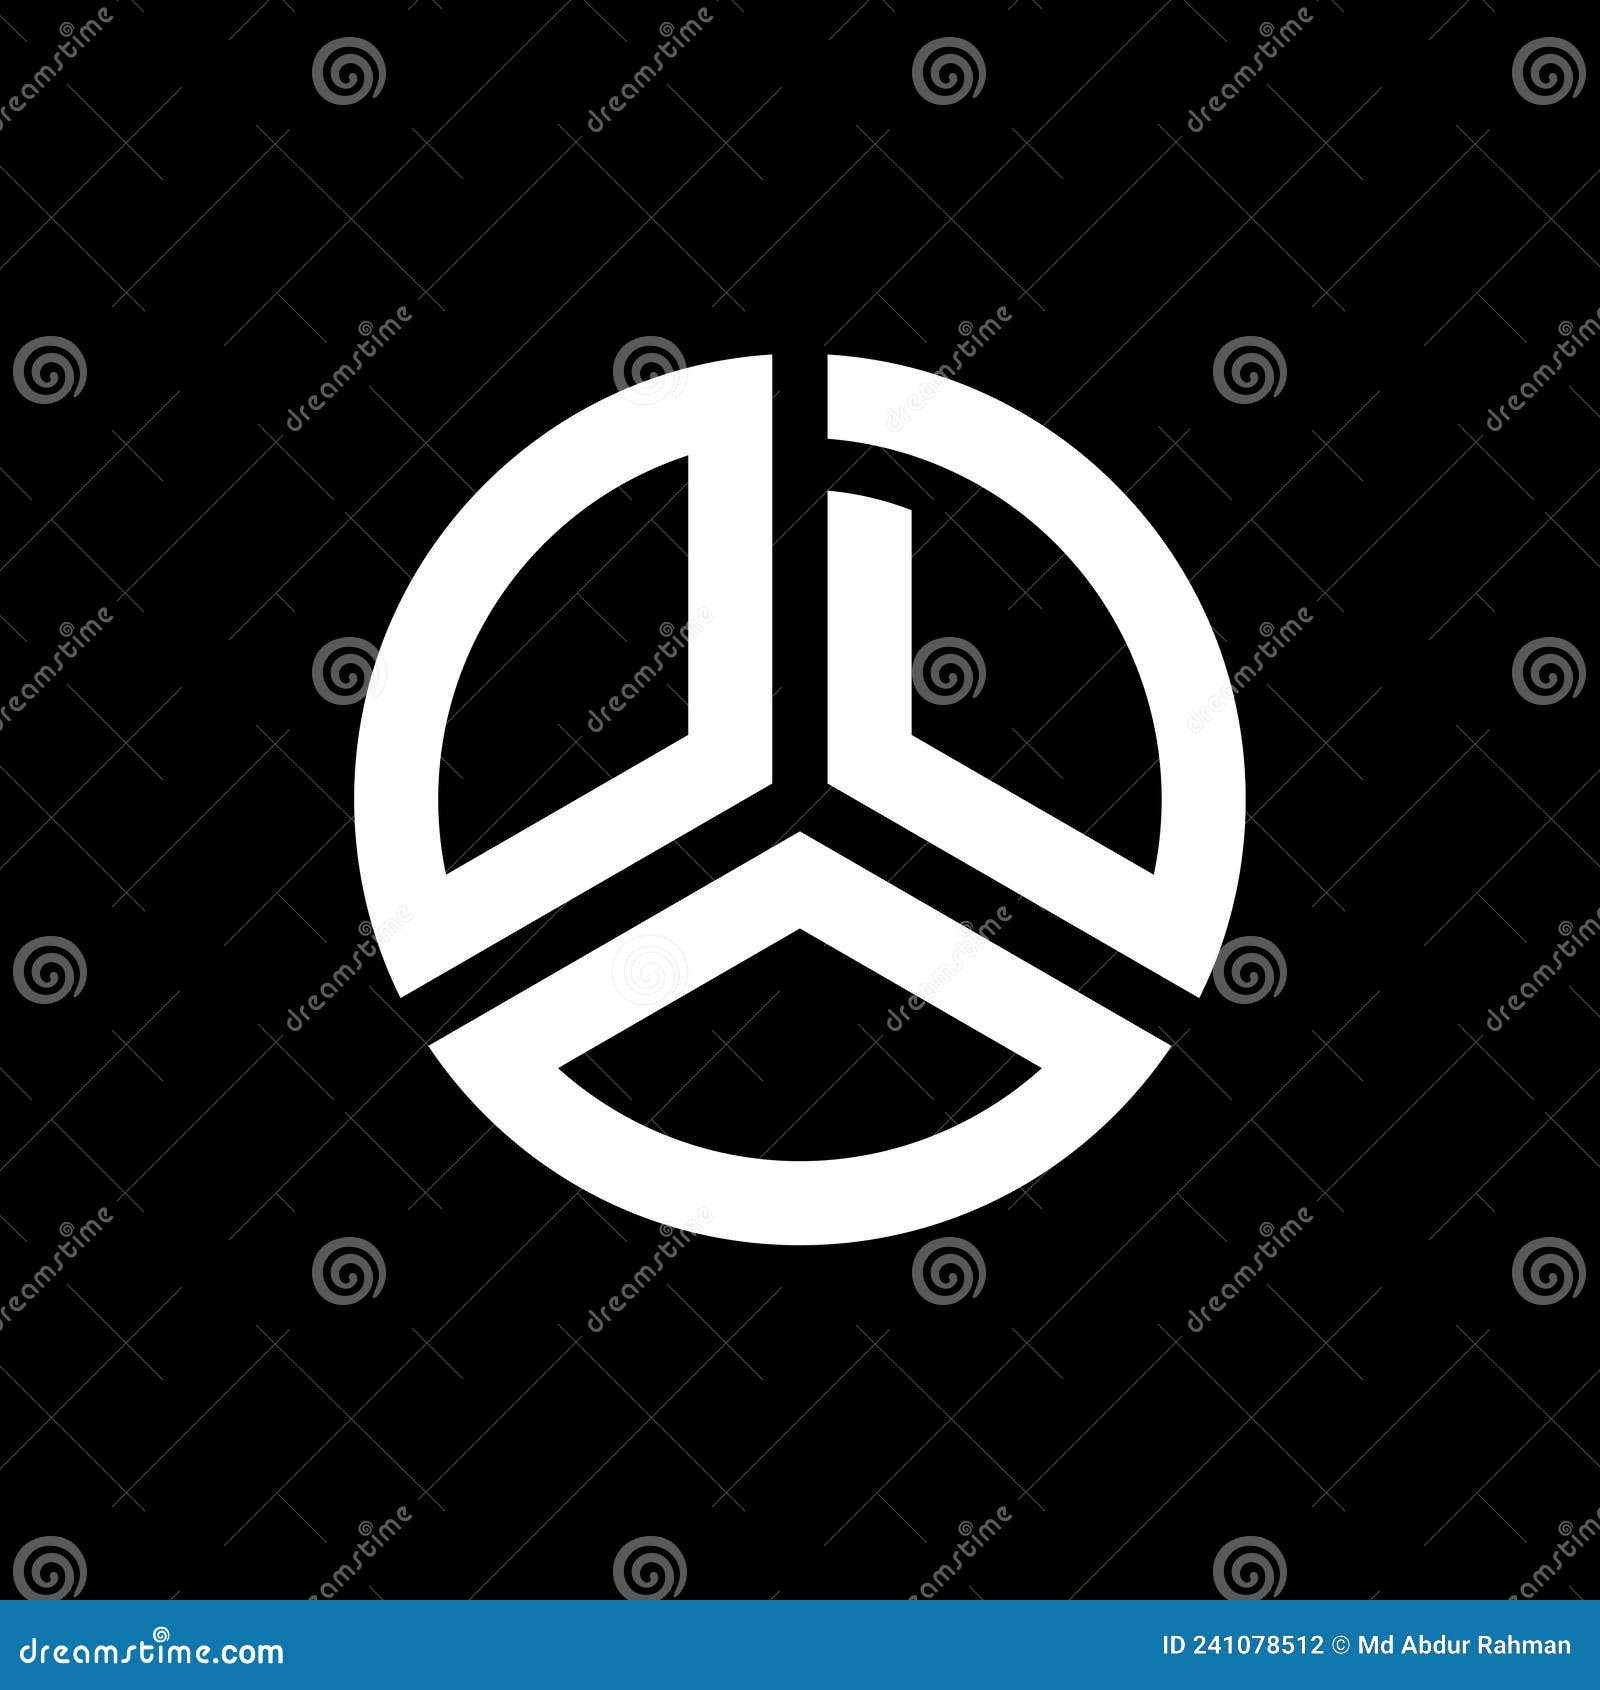 odo letter logo  on black background. odo creative initials letter logo concept. odo letter 